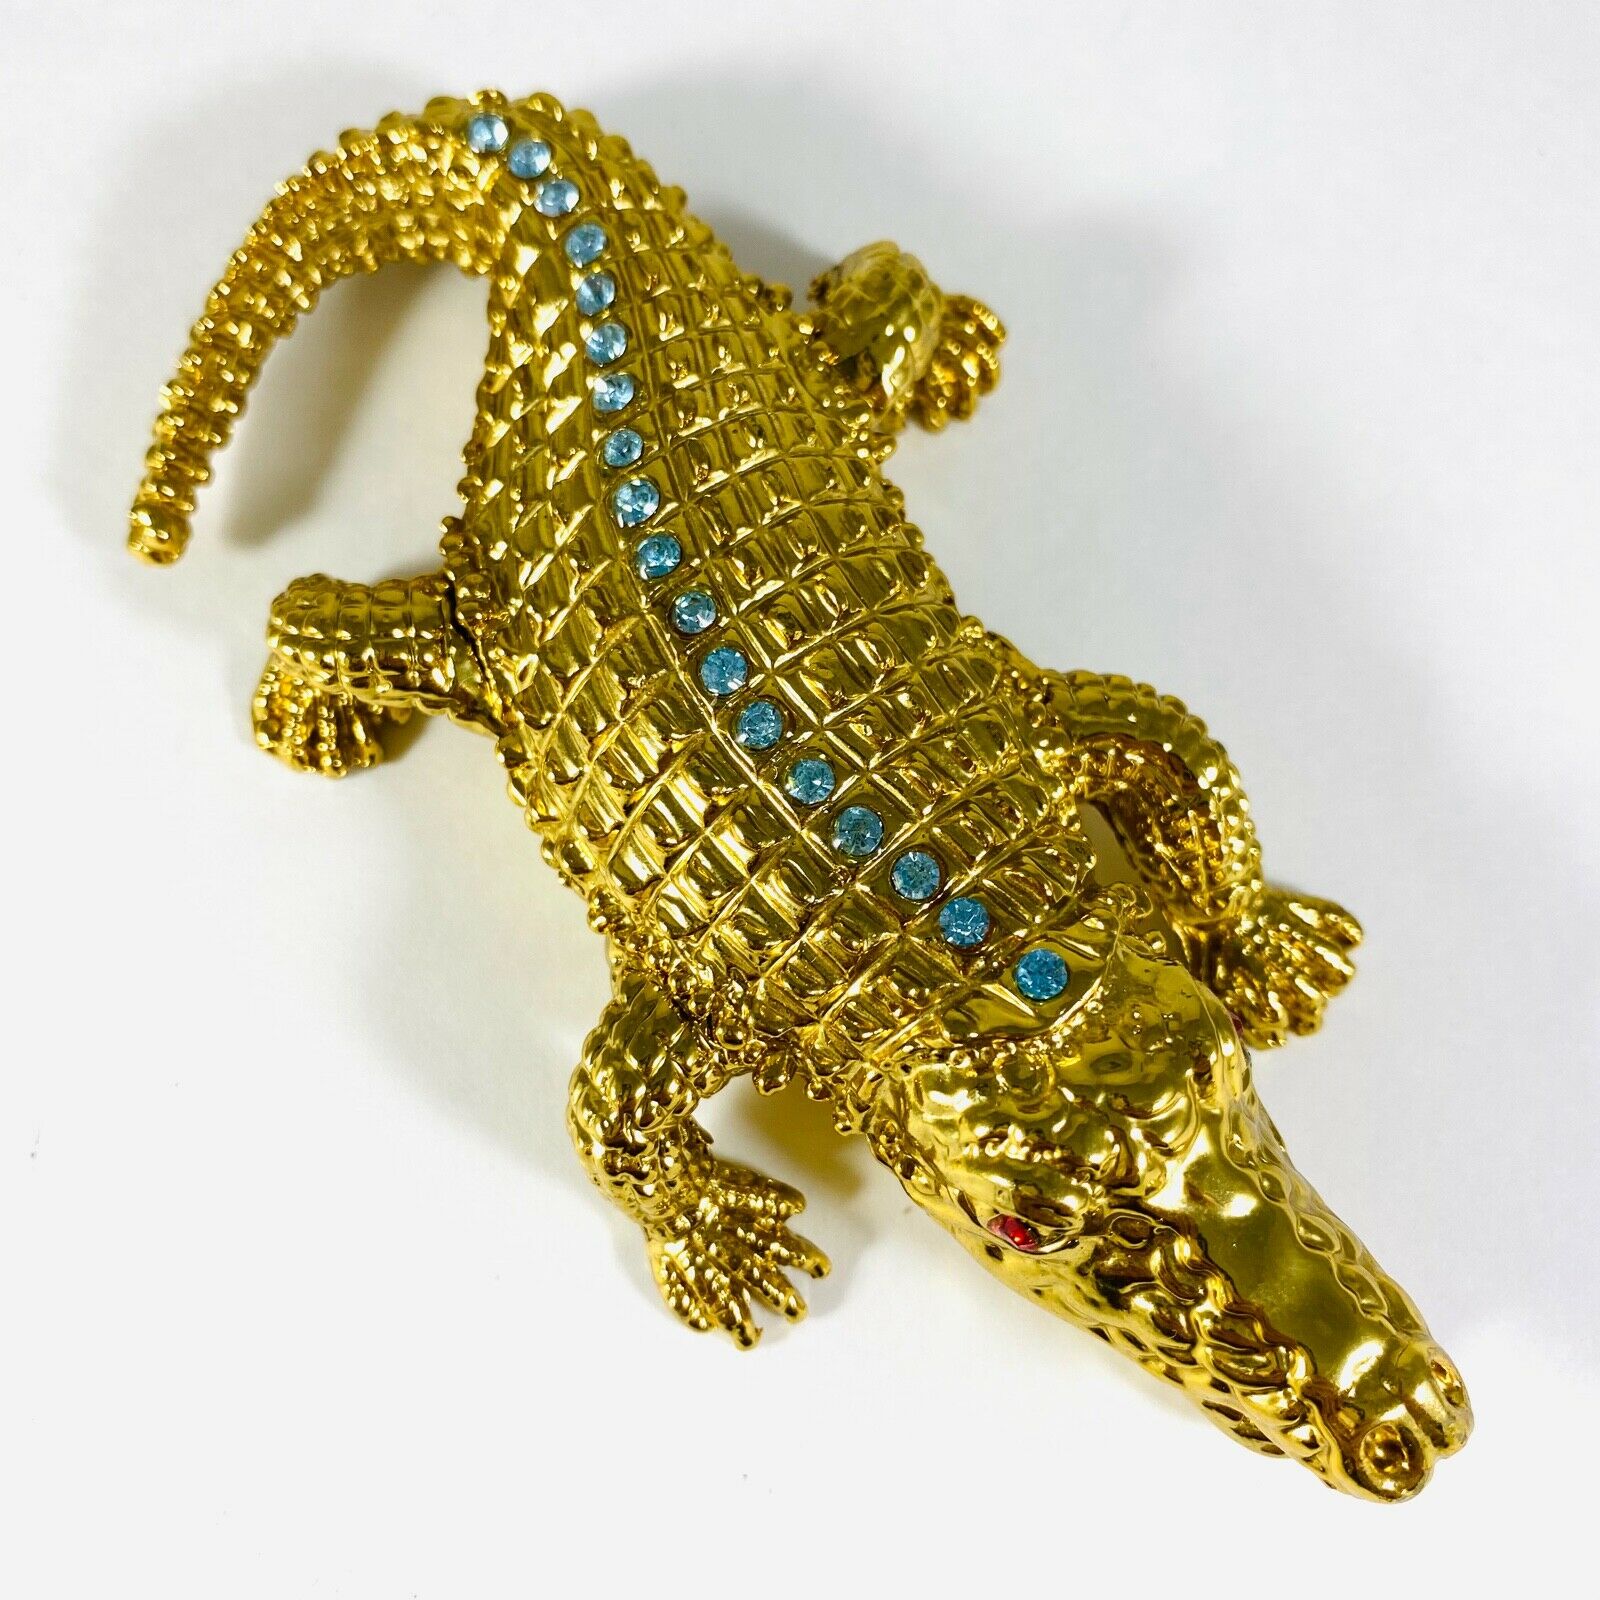 Golden Alligator Crocodile Blue Rhinestone Little Trinket Box Qifu Nib